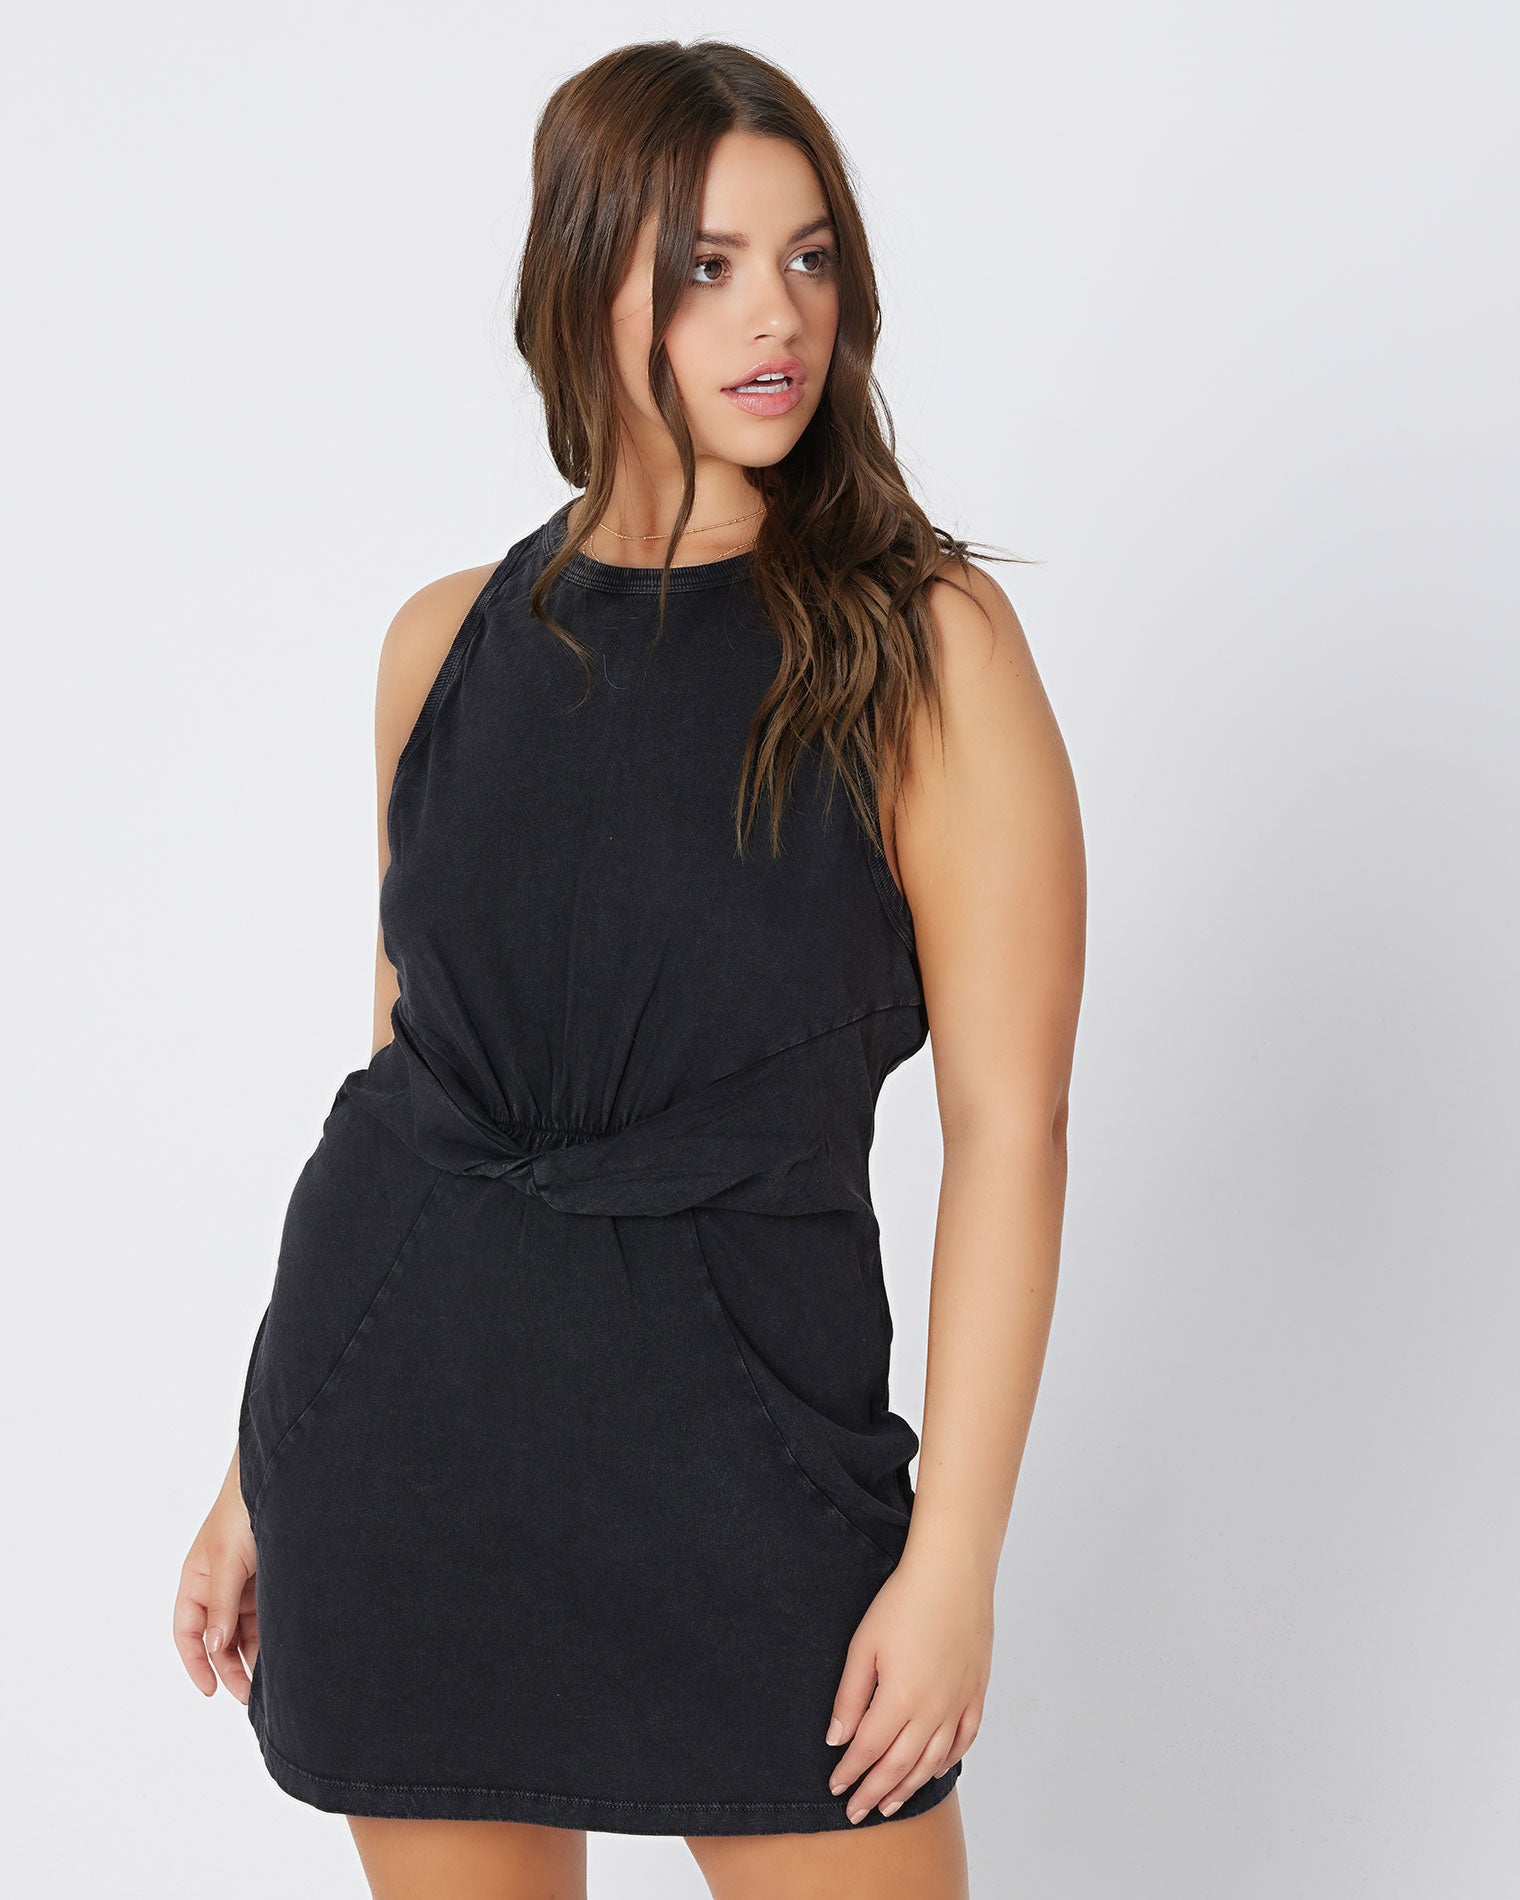 Seaview Dress - Black Black | Model: Kacie (size: XL)